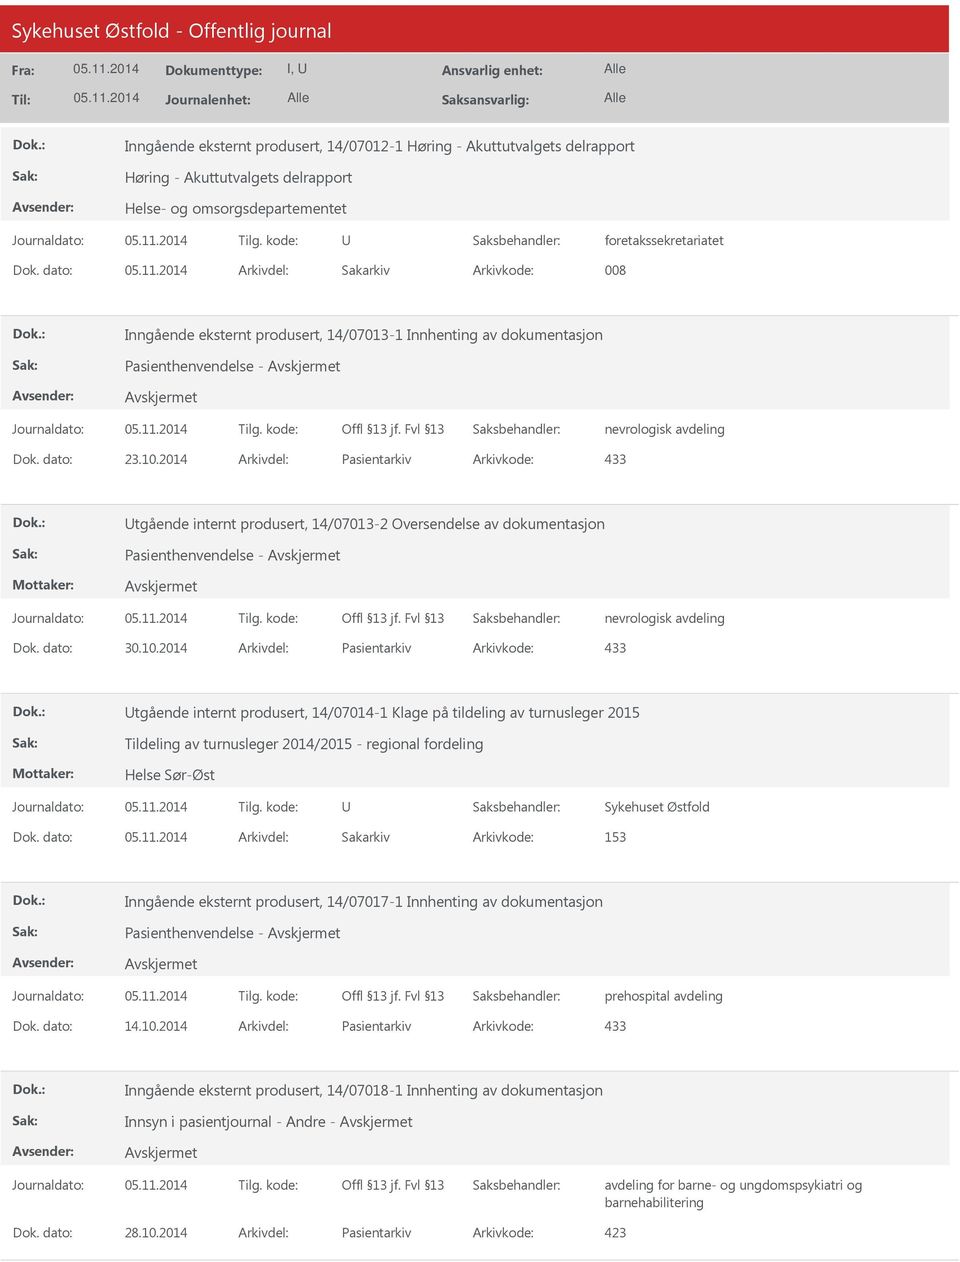 2014 Arkivdel: Pasientarkiv Arkivkode: 433 tgående internt produsert, 14/07013-2 Oversendelse av dokumentasjon Pasienthenvendelse - nevrologisk avdeling Dok. dato: 30.10.